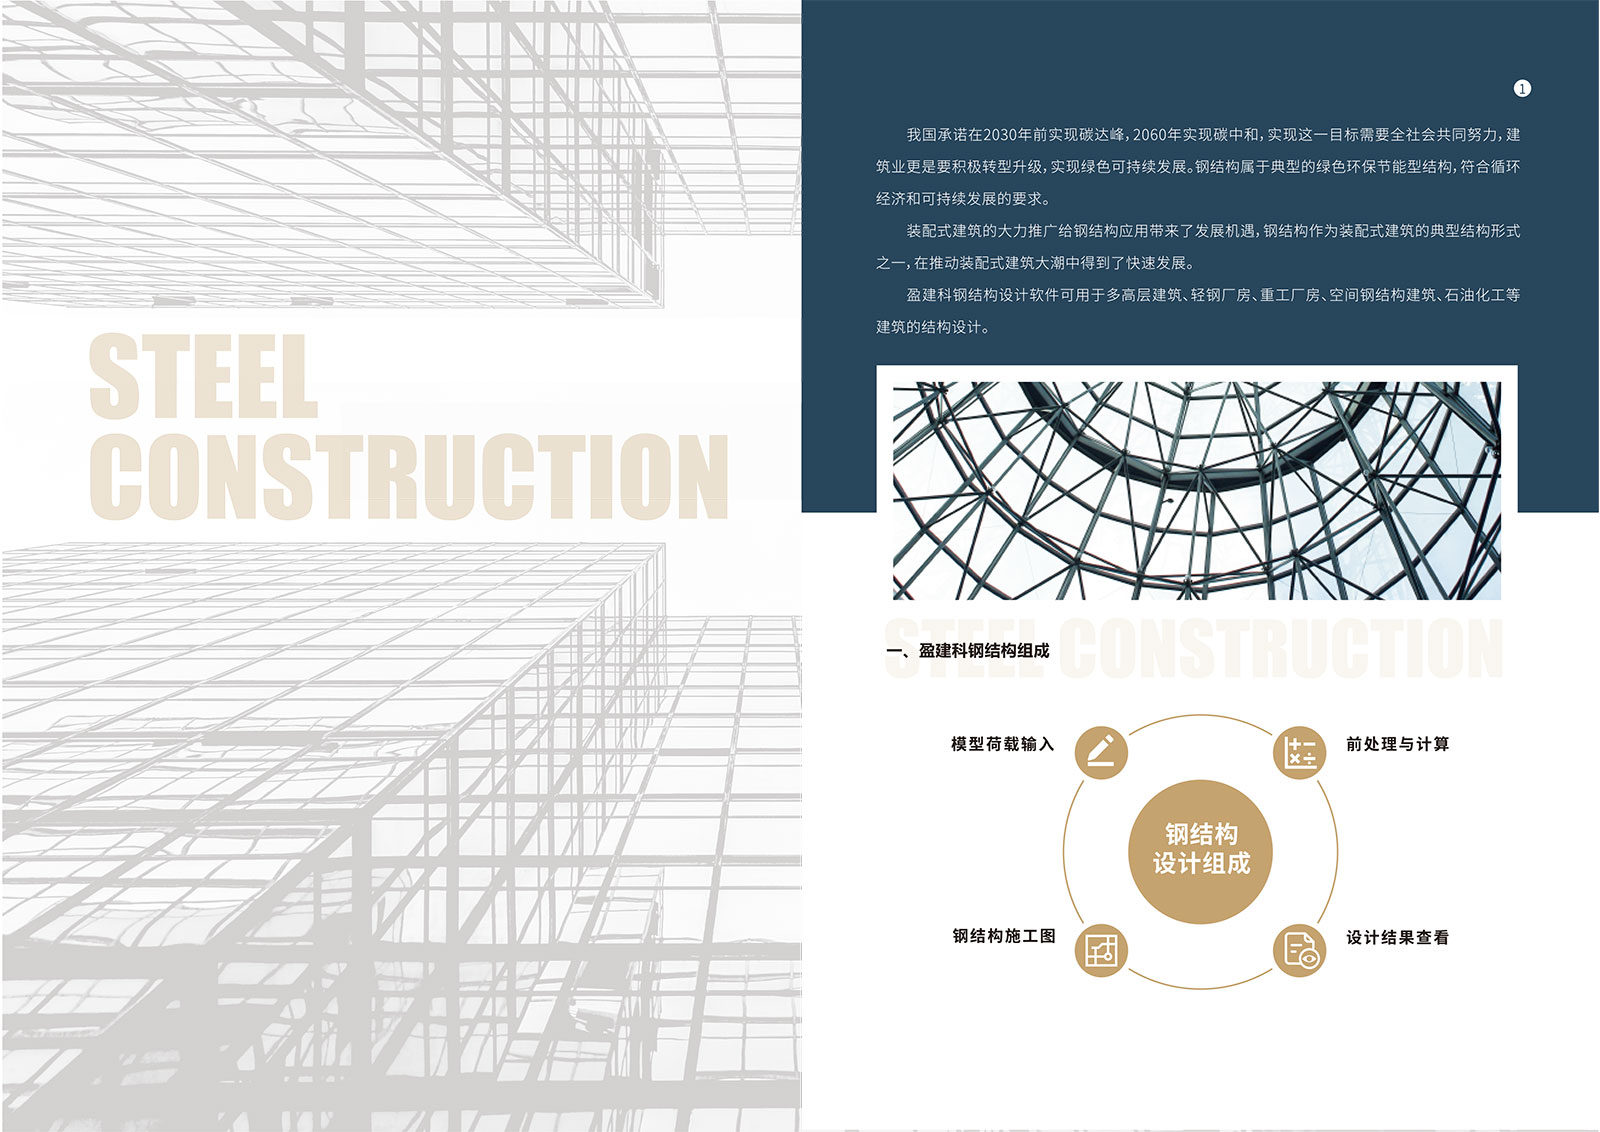 盈建科钢结构设计软件彩页-2.jpg